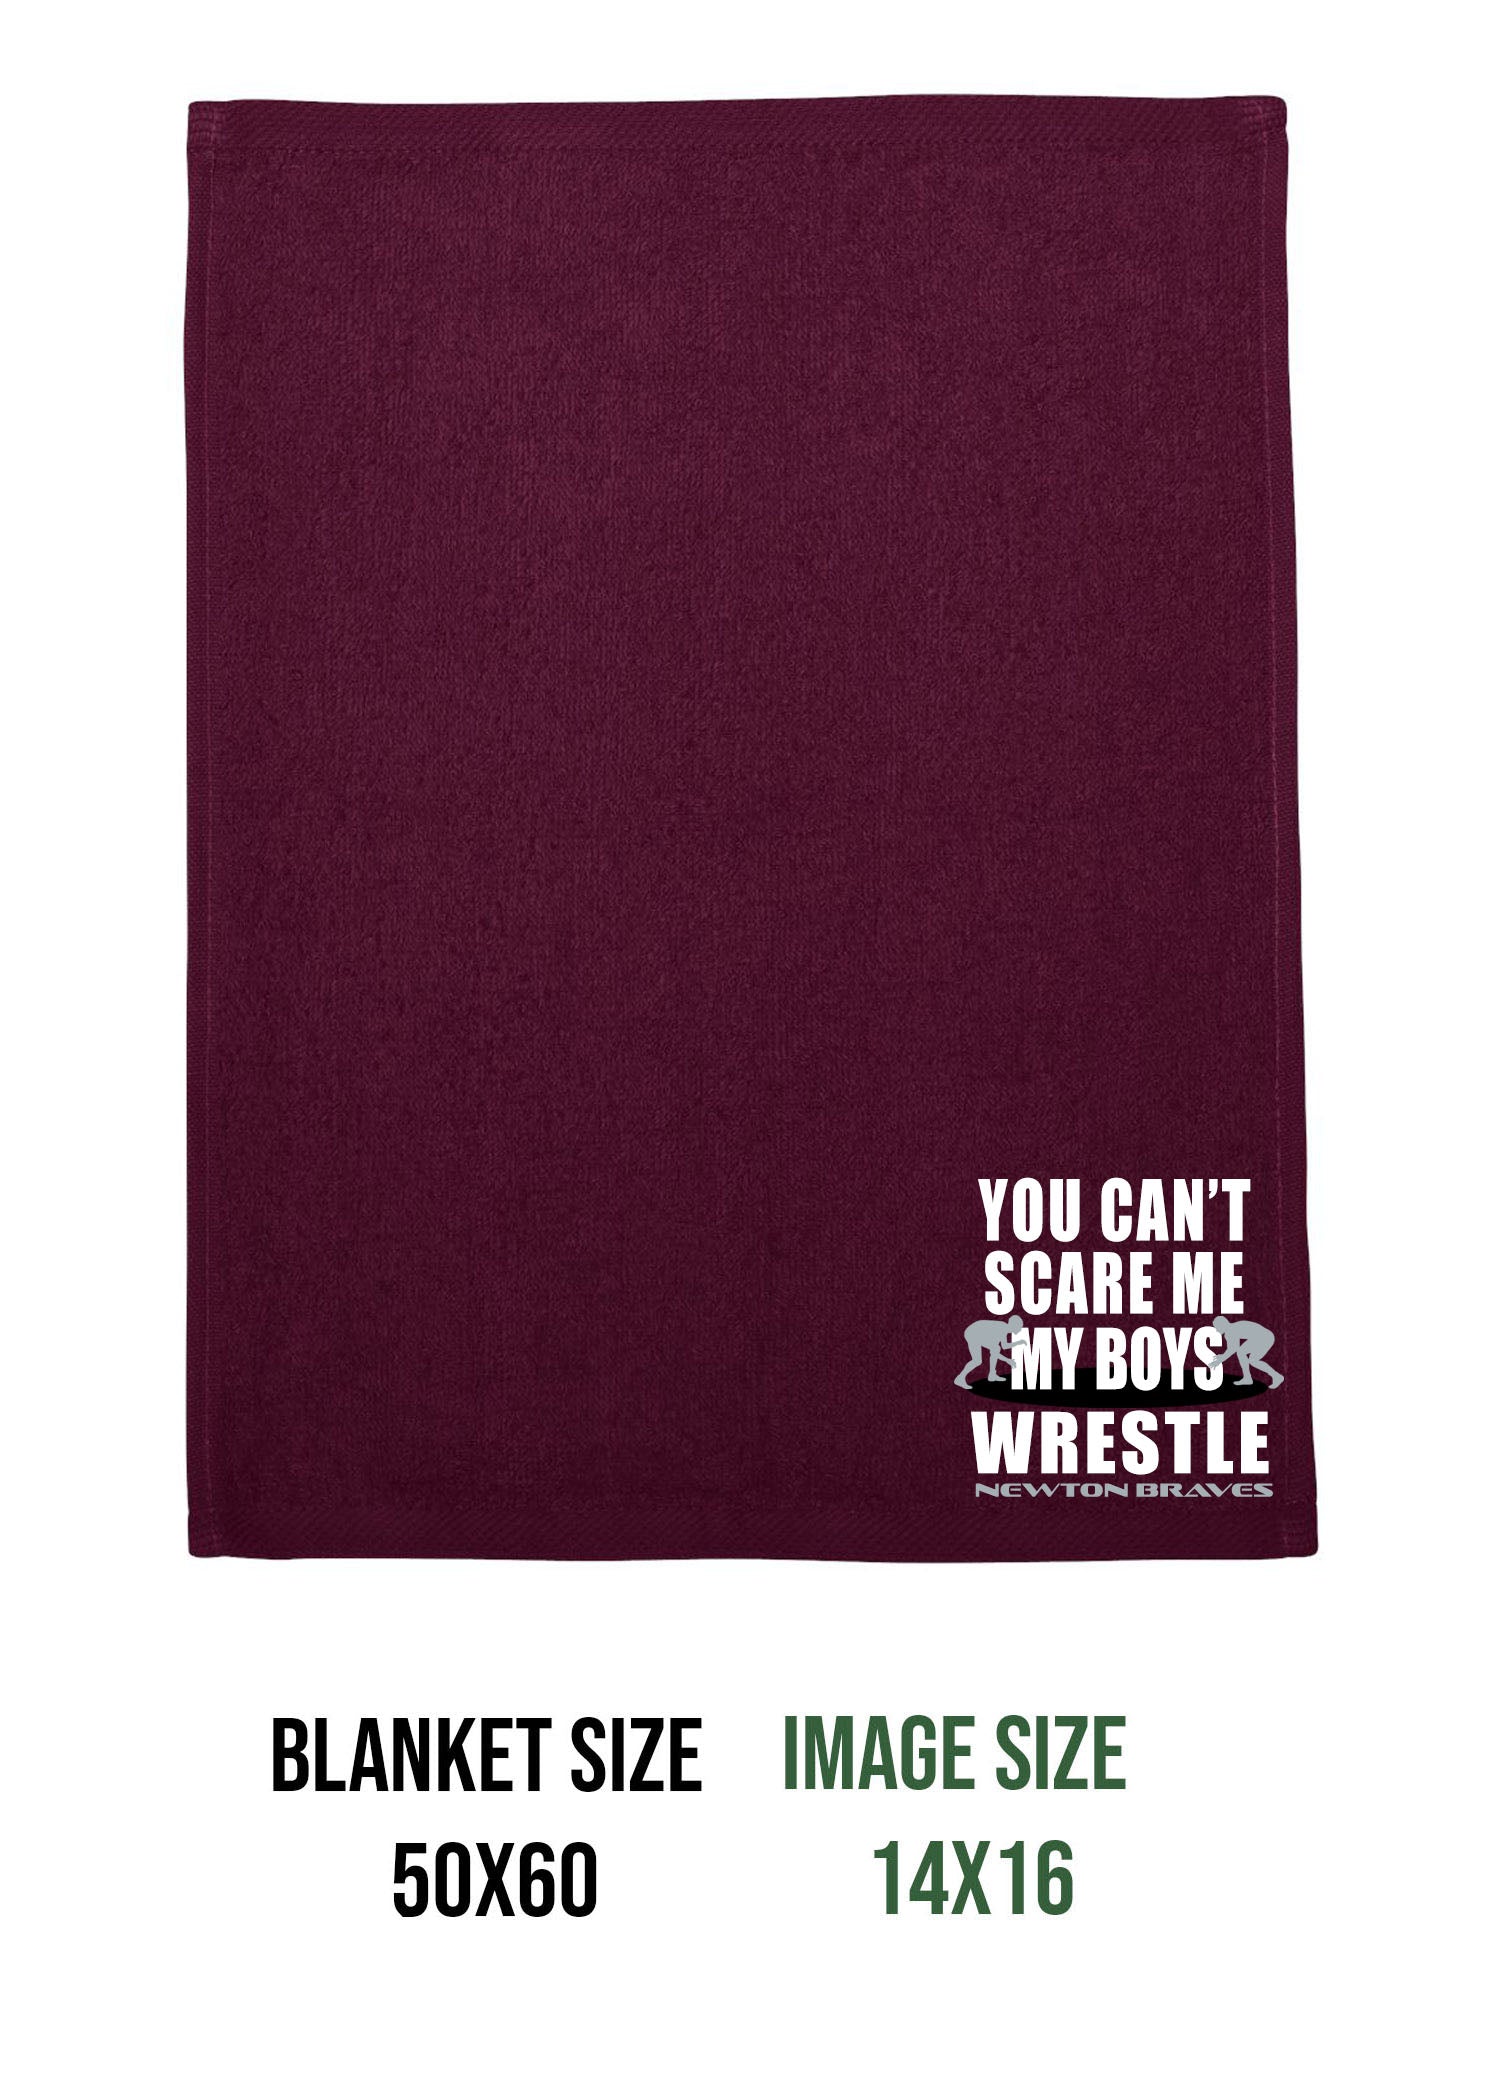 Newton Wrestling Design 11 Blanket